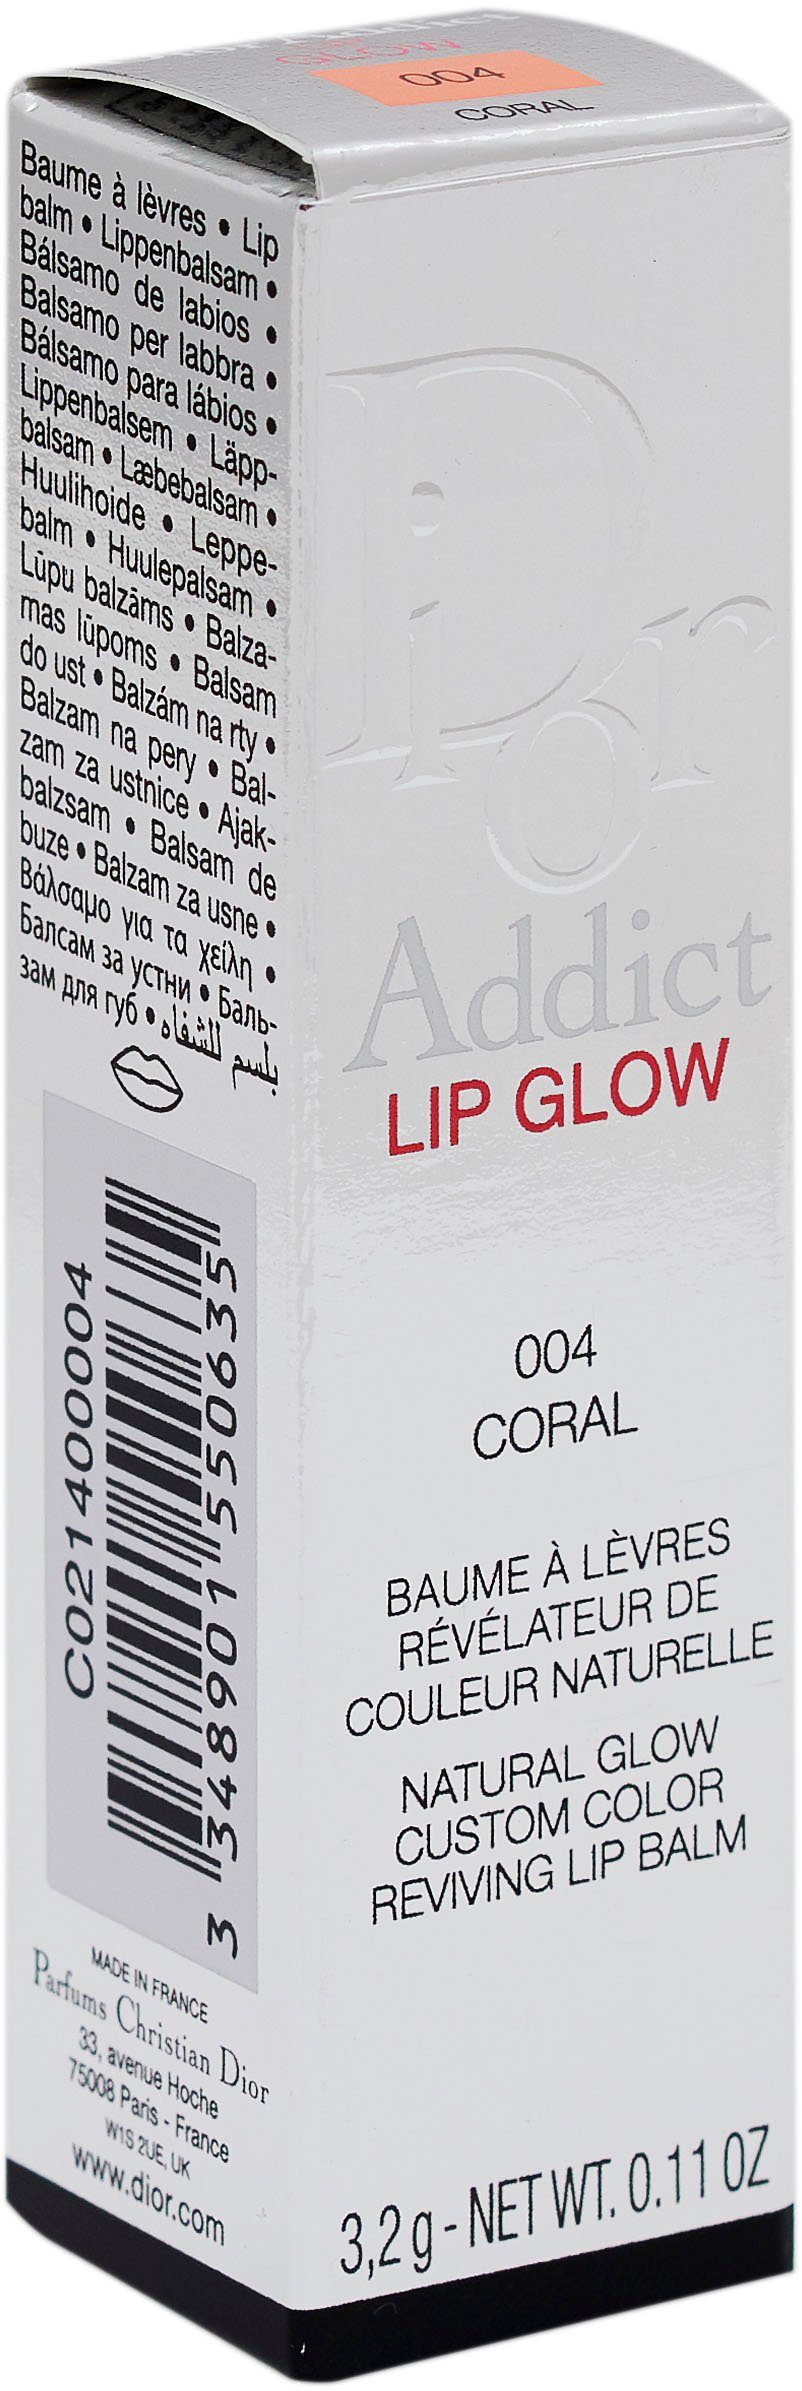 Dior Lippenbalsam Coral Glow 004 Addict Dior Lip